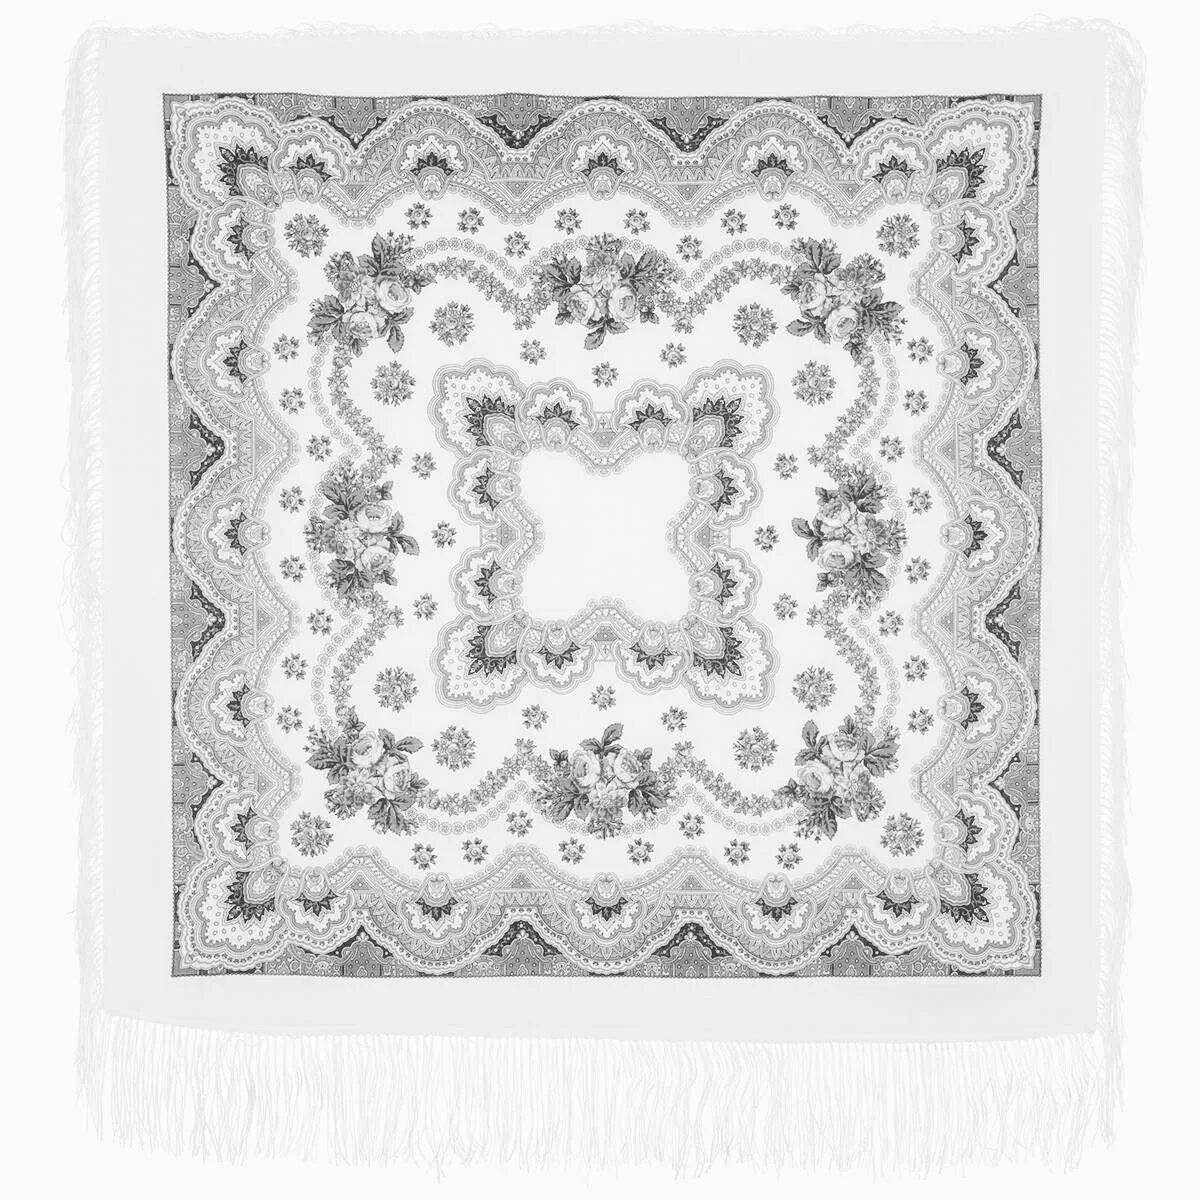 Ornamental Pavlovo Posad shawls